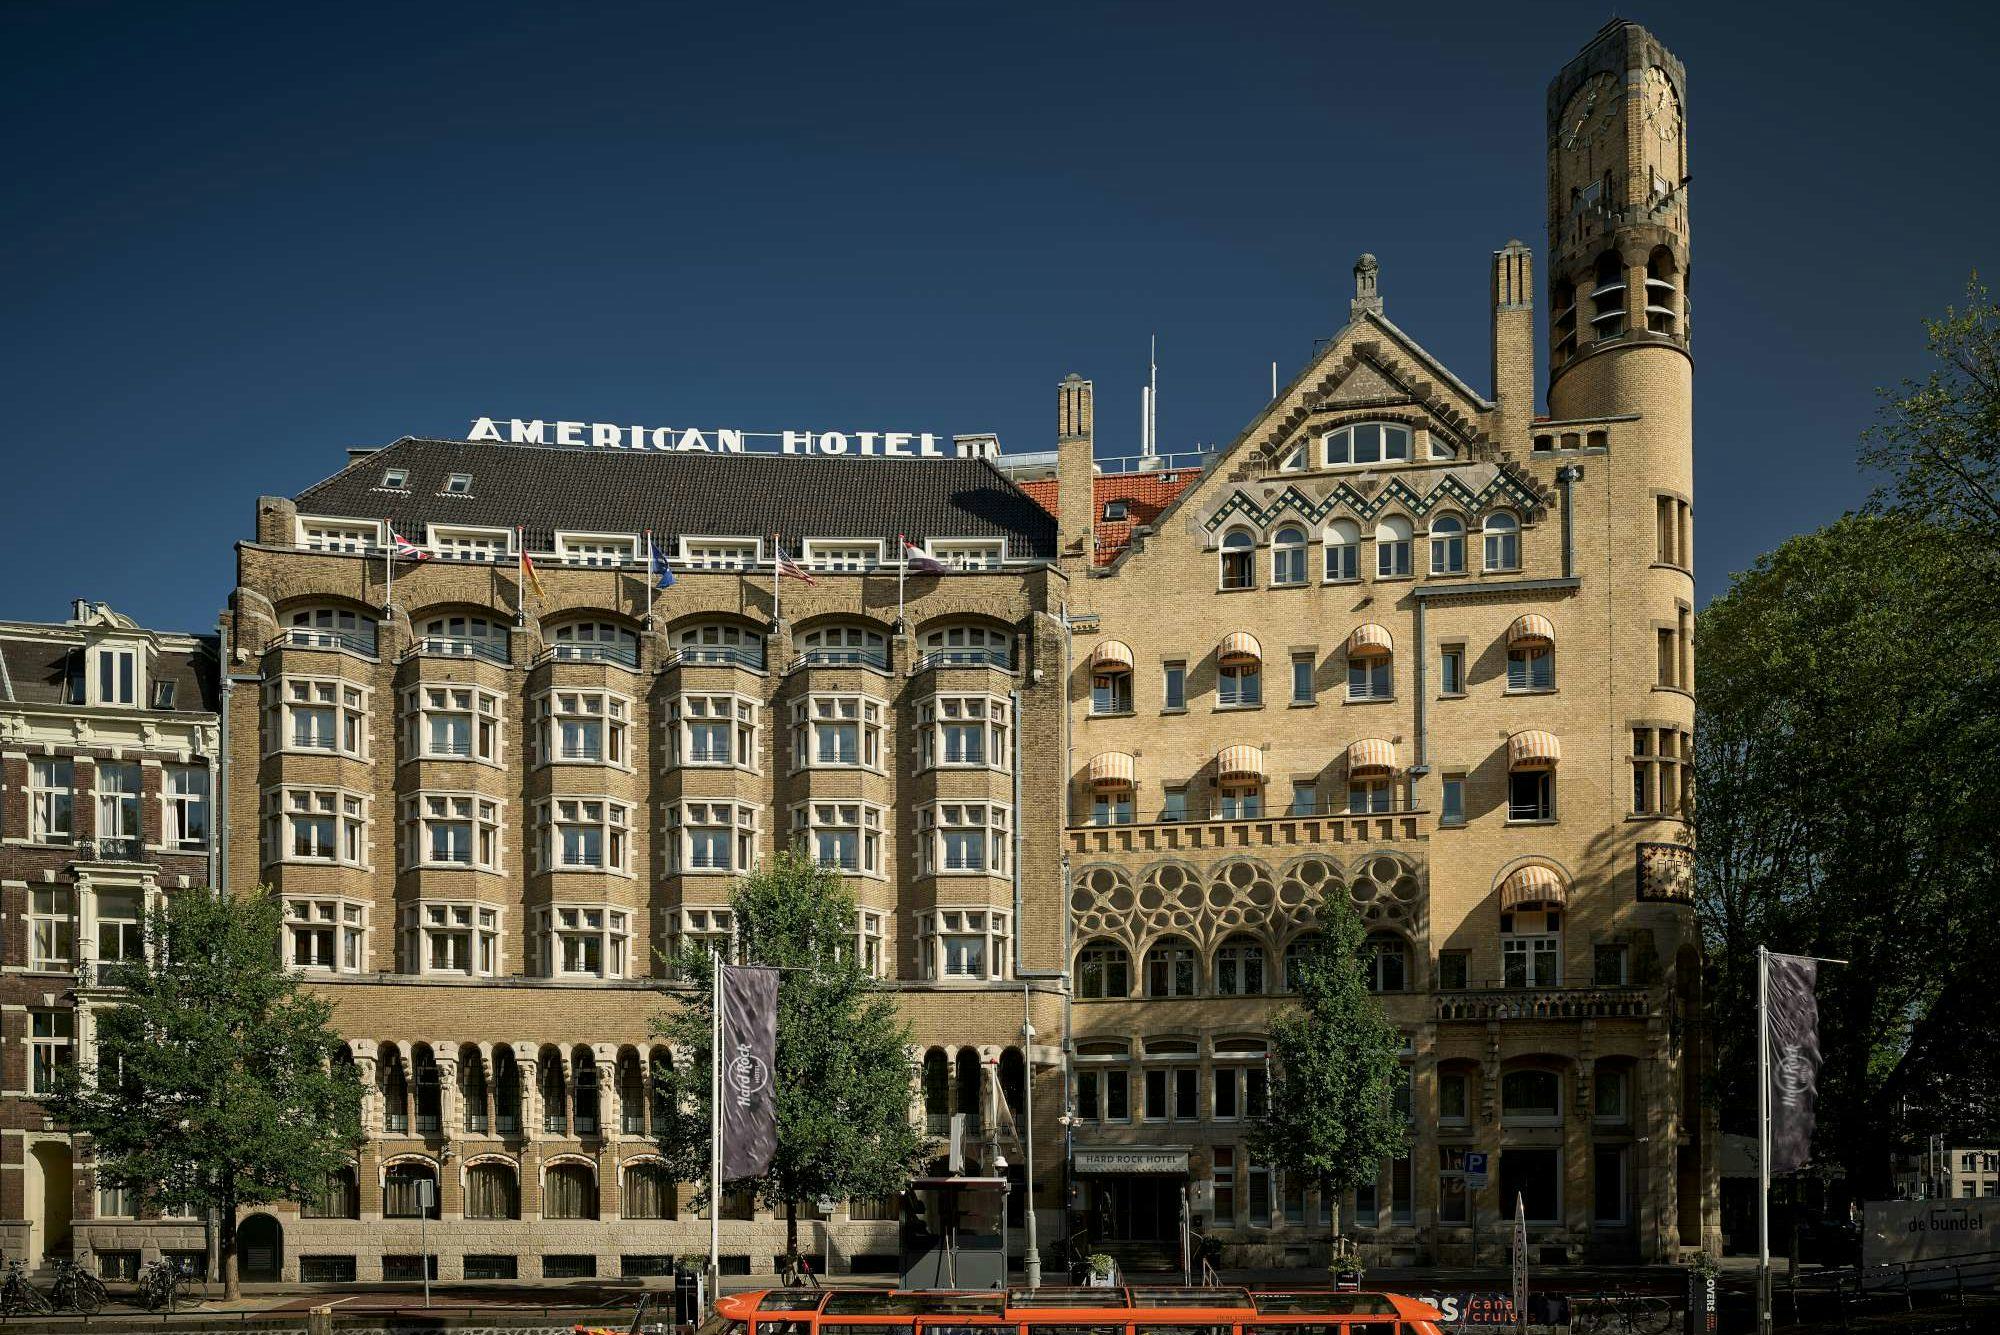 Hard Rock Hotel Amsterdam American: iconisch hotel met muzikaal jasje